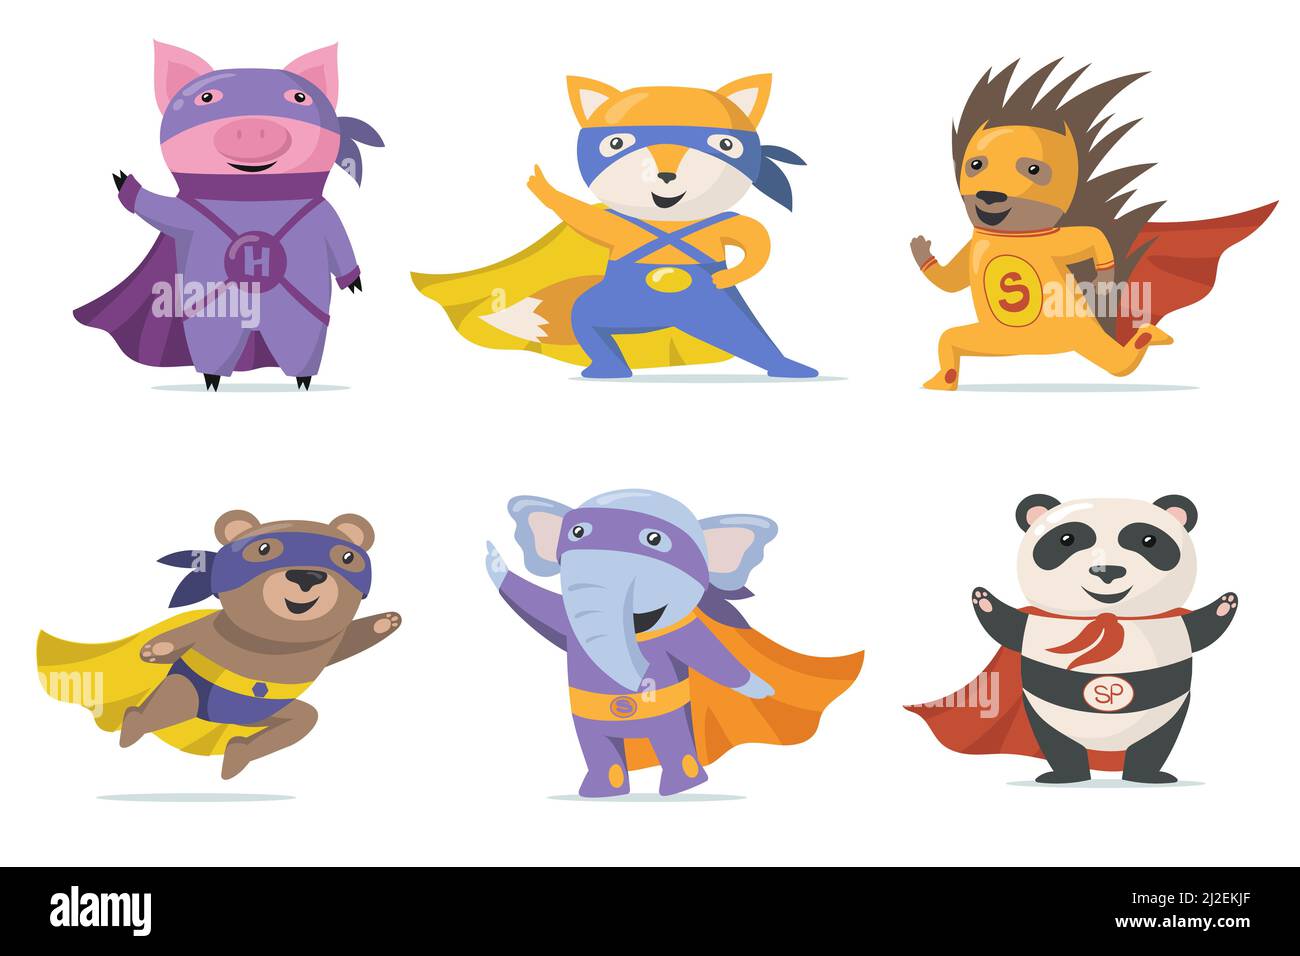 Jeu plat animaux super-héros drôle pour la conception de Web. Collection d'illustrations vectorielles isolées de porcs, de renards, d'ours, d'éléphants, de panda et de hérisson Illustration de Vecteur